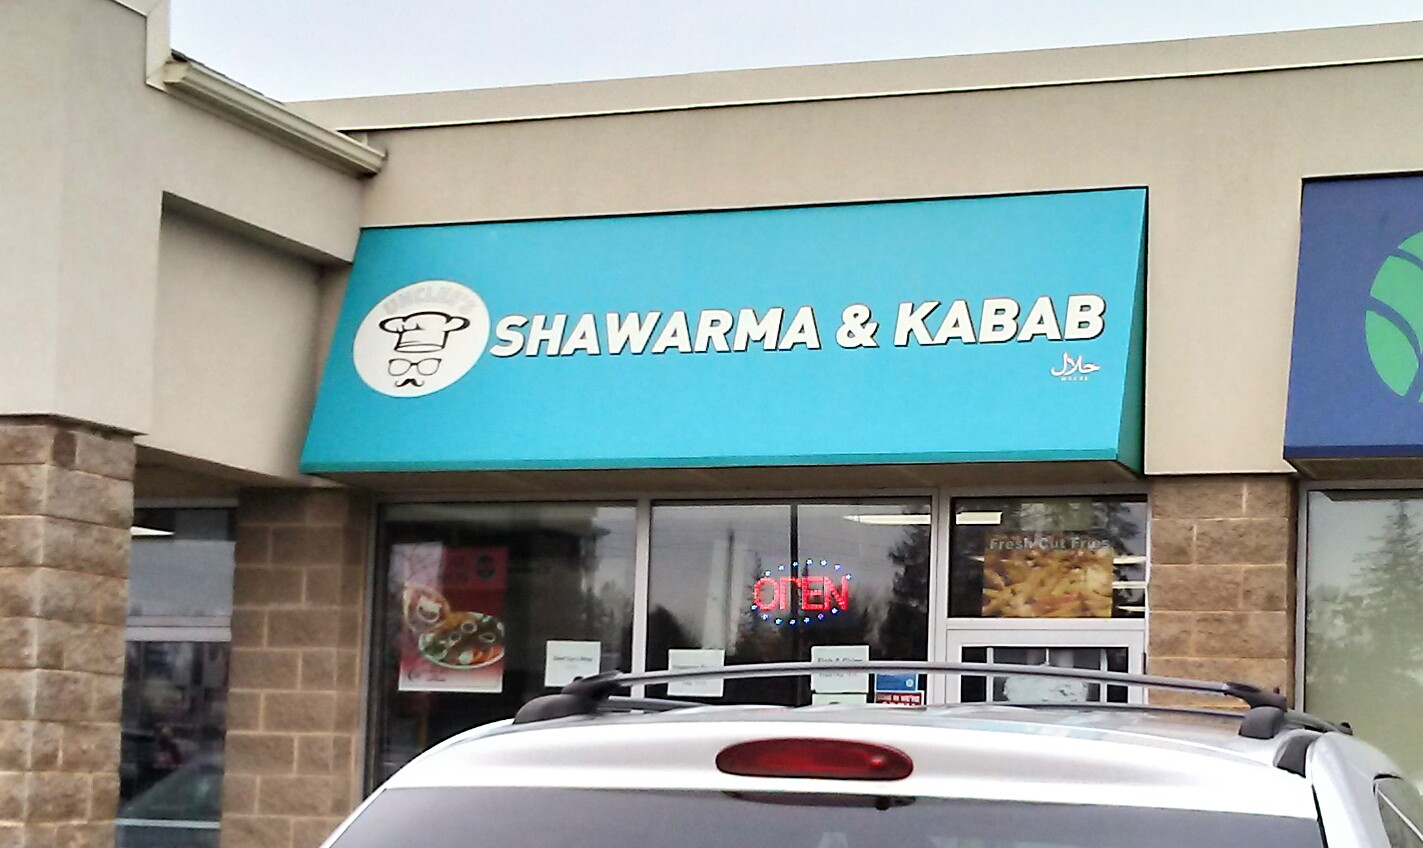 Uncle's Shawarma & Kabab